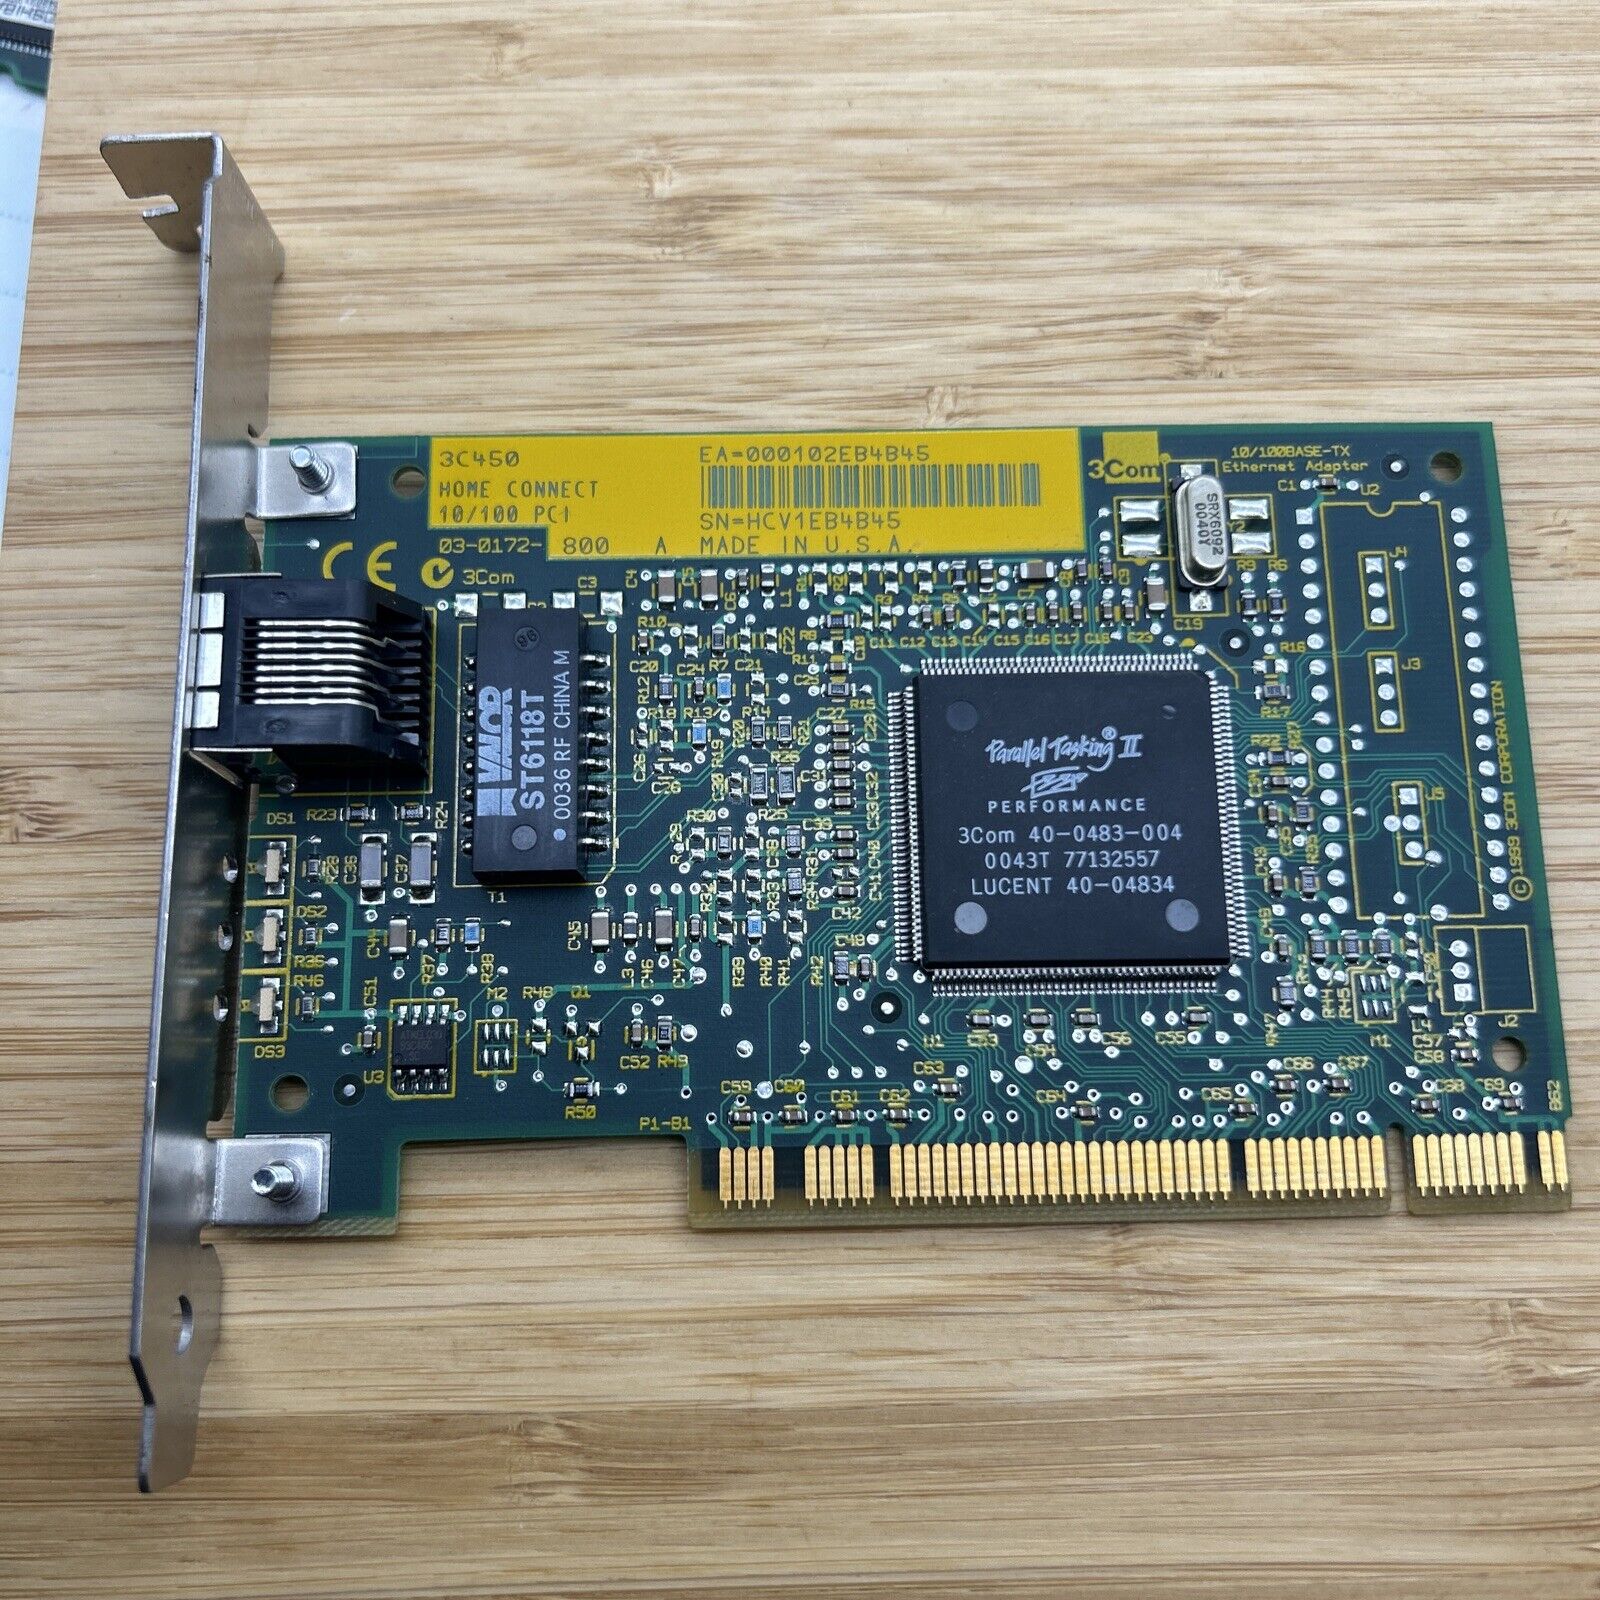 3COM 3C450 FAST ETHERLINK PCI 10/100 ETHERNET NETWORK CARD Parallel Tasking II